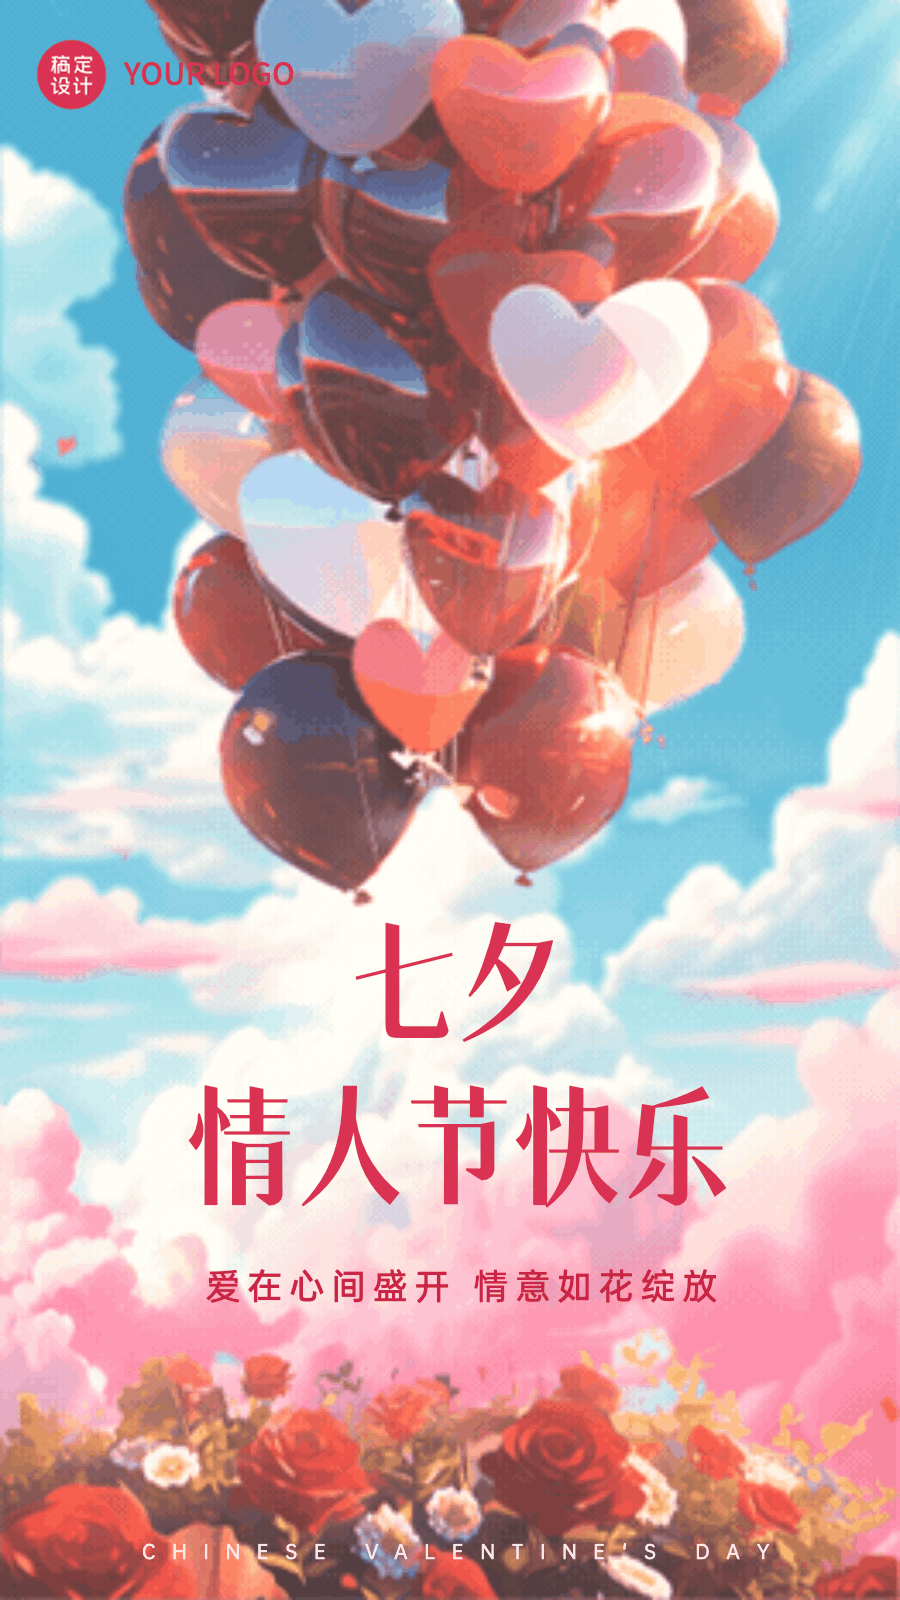 七夕情人节节日祝福竖版动态海报